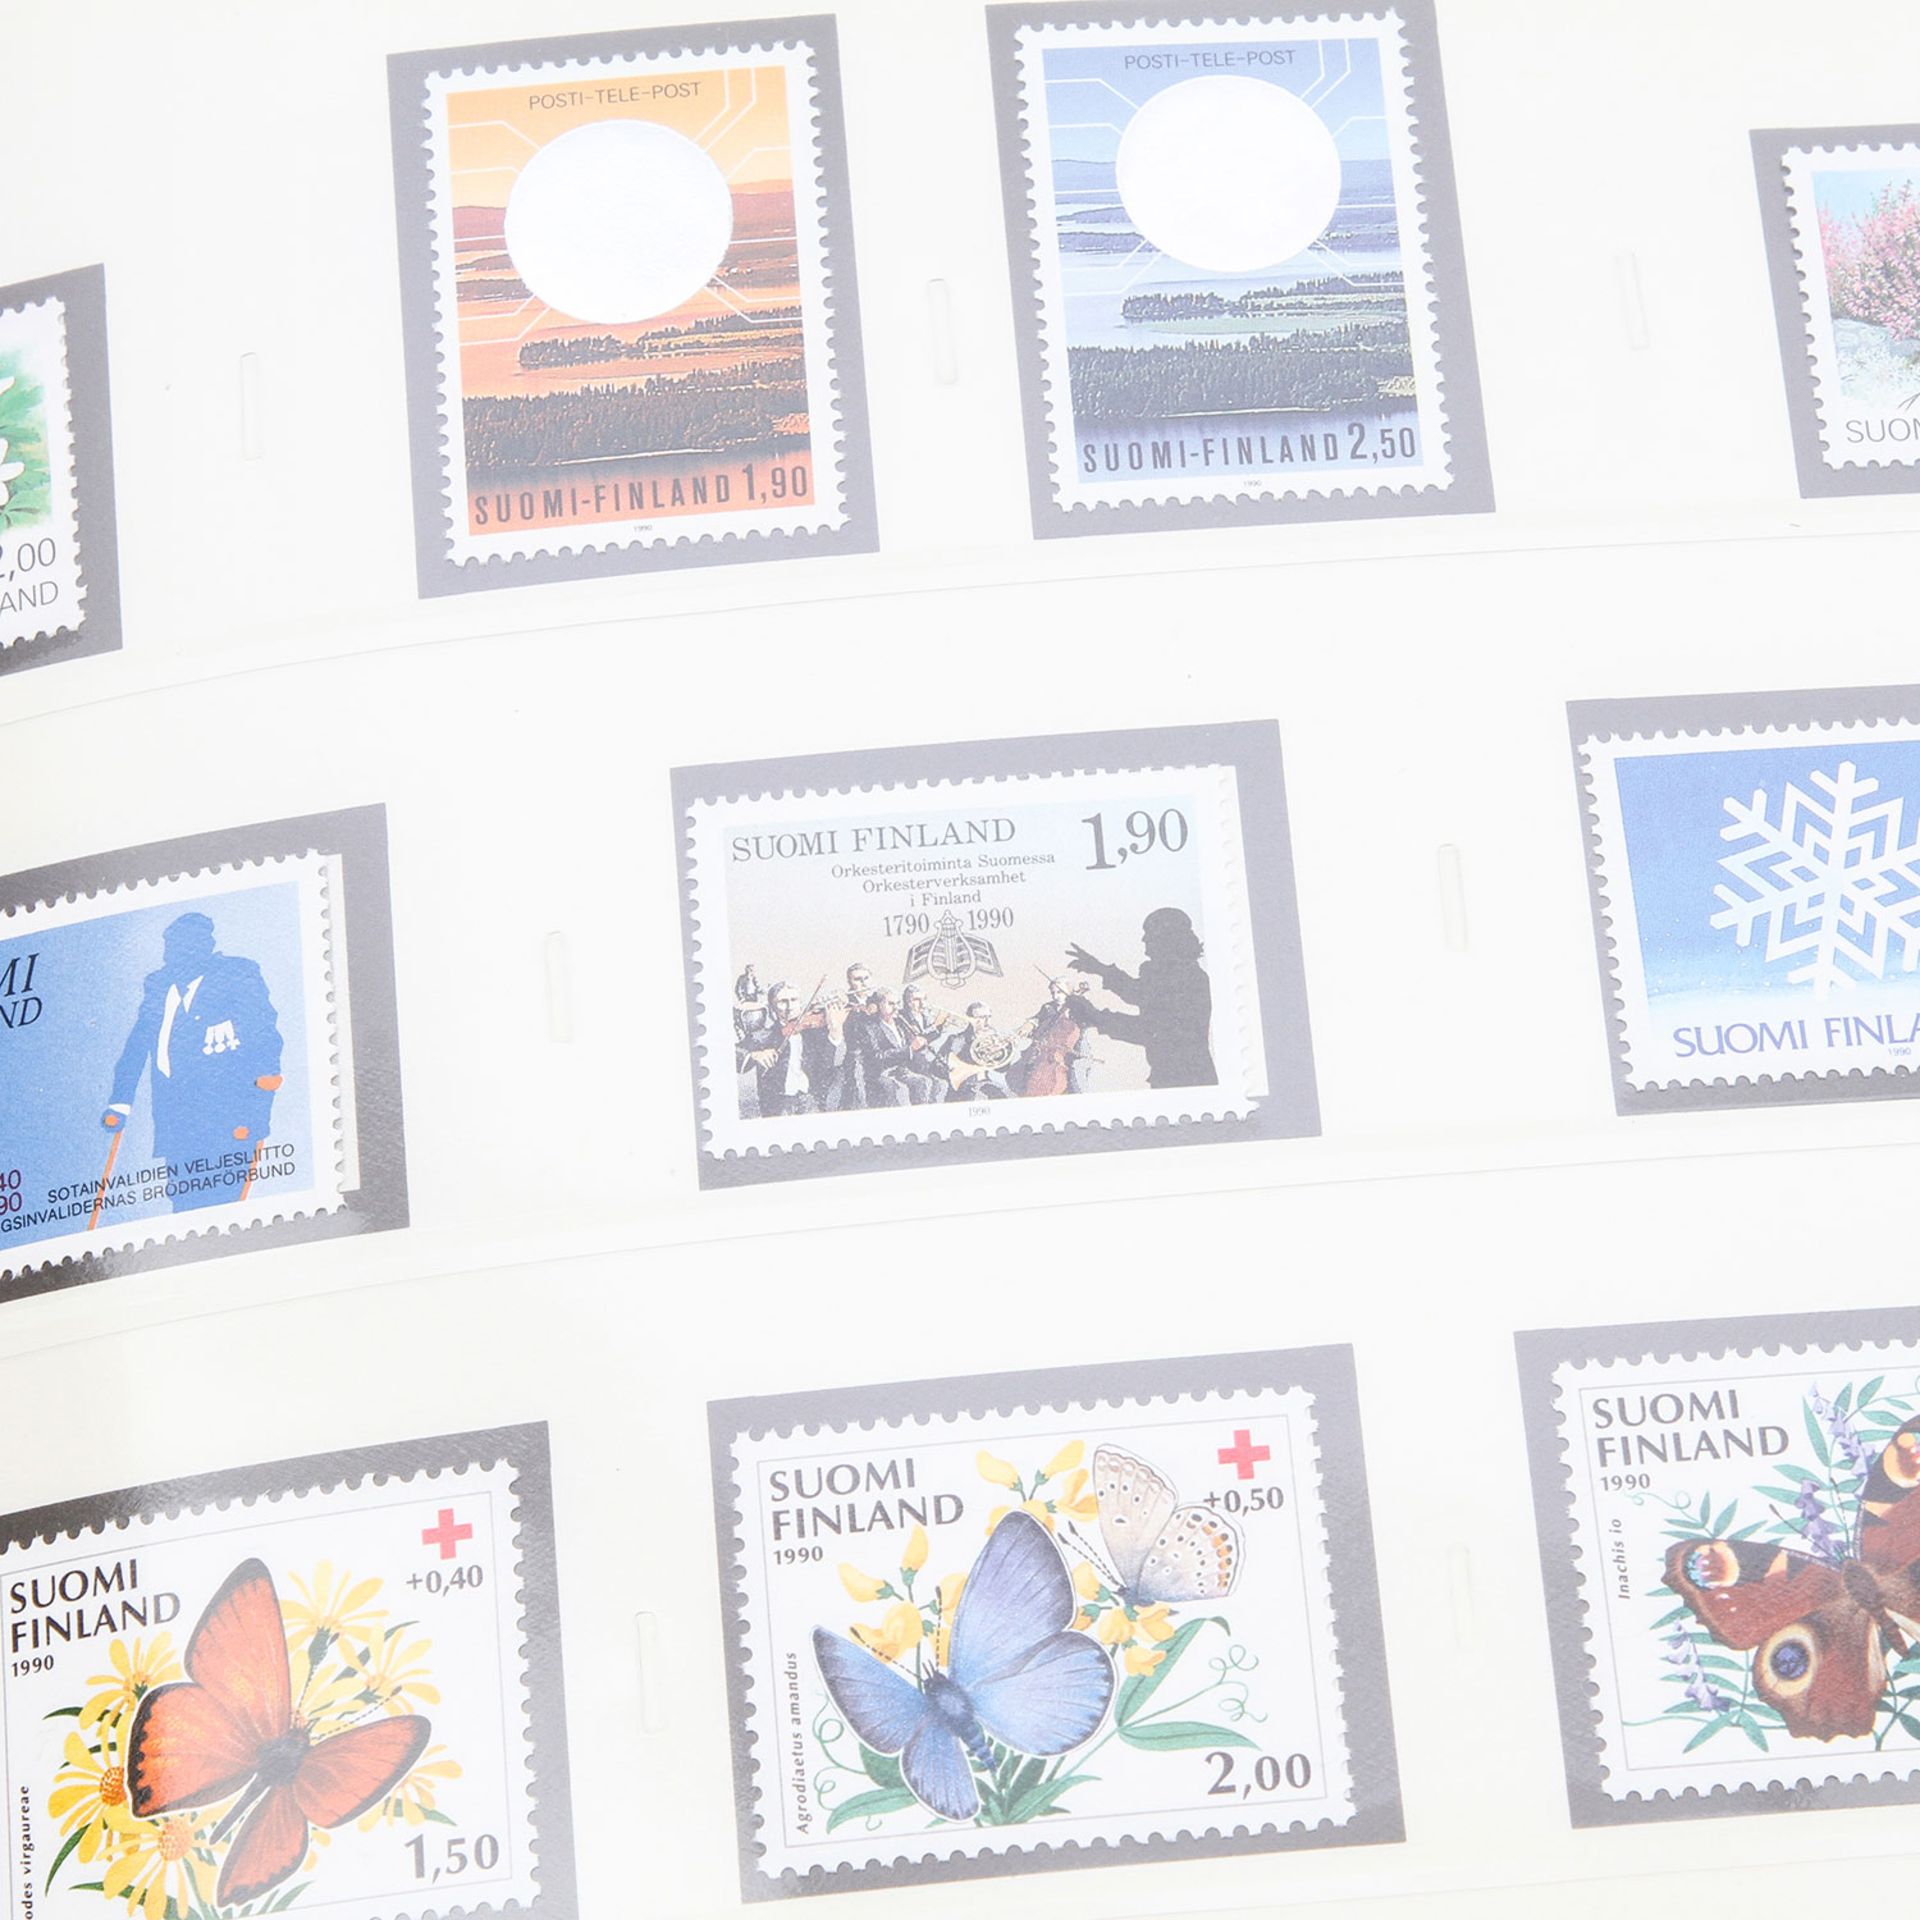 Finnland, Aland, Norwegen, Polen, Rumänien,Komplette postfrische Sammlung Finnland von 1956/57 - - Bild 3 aus 3